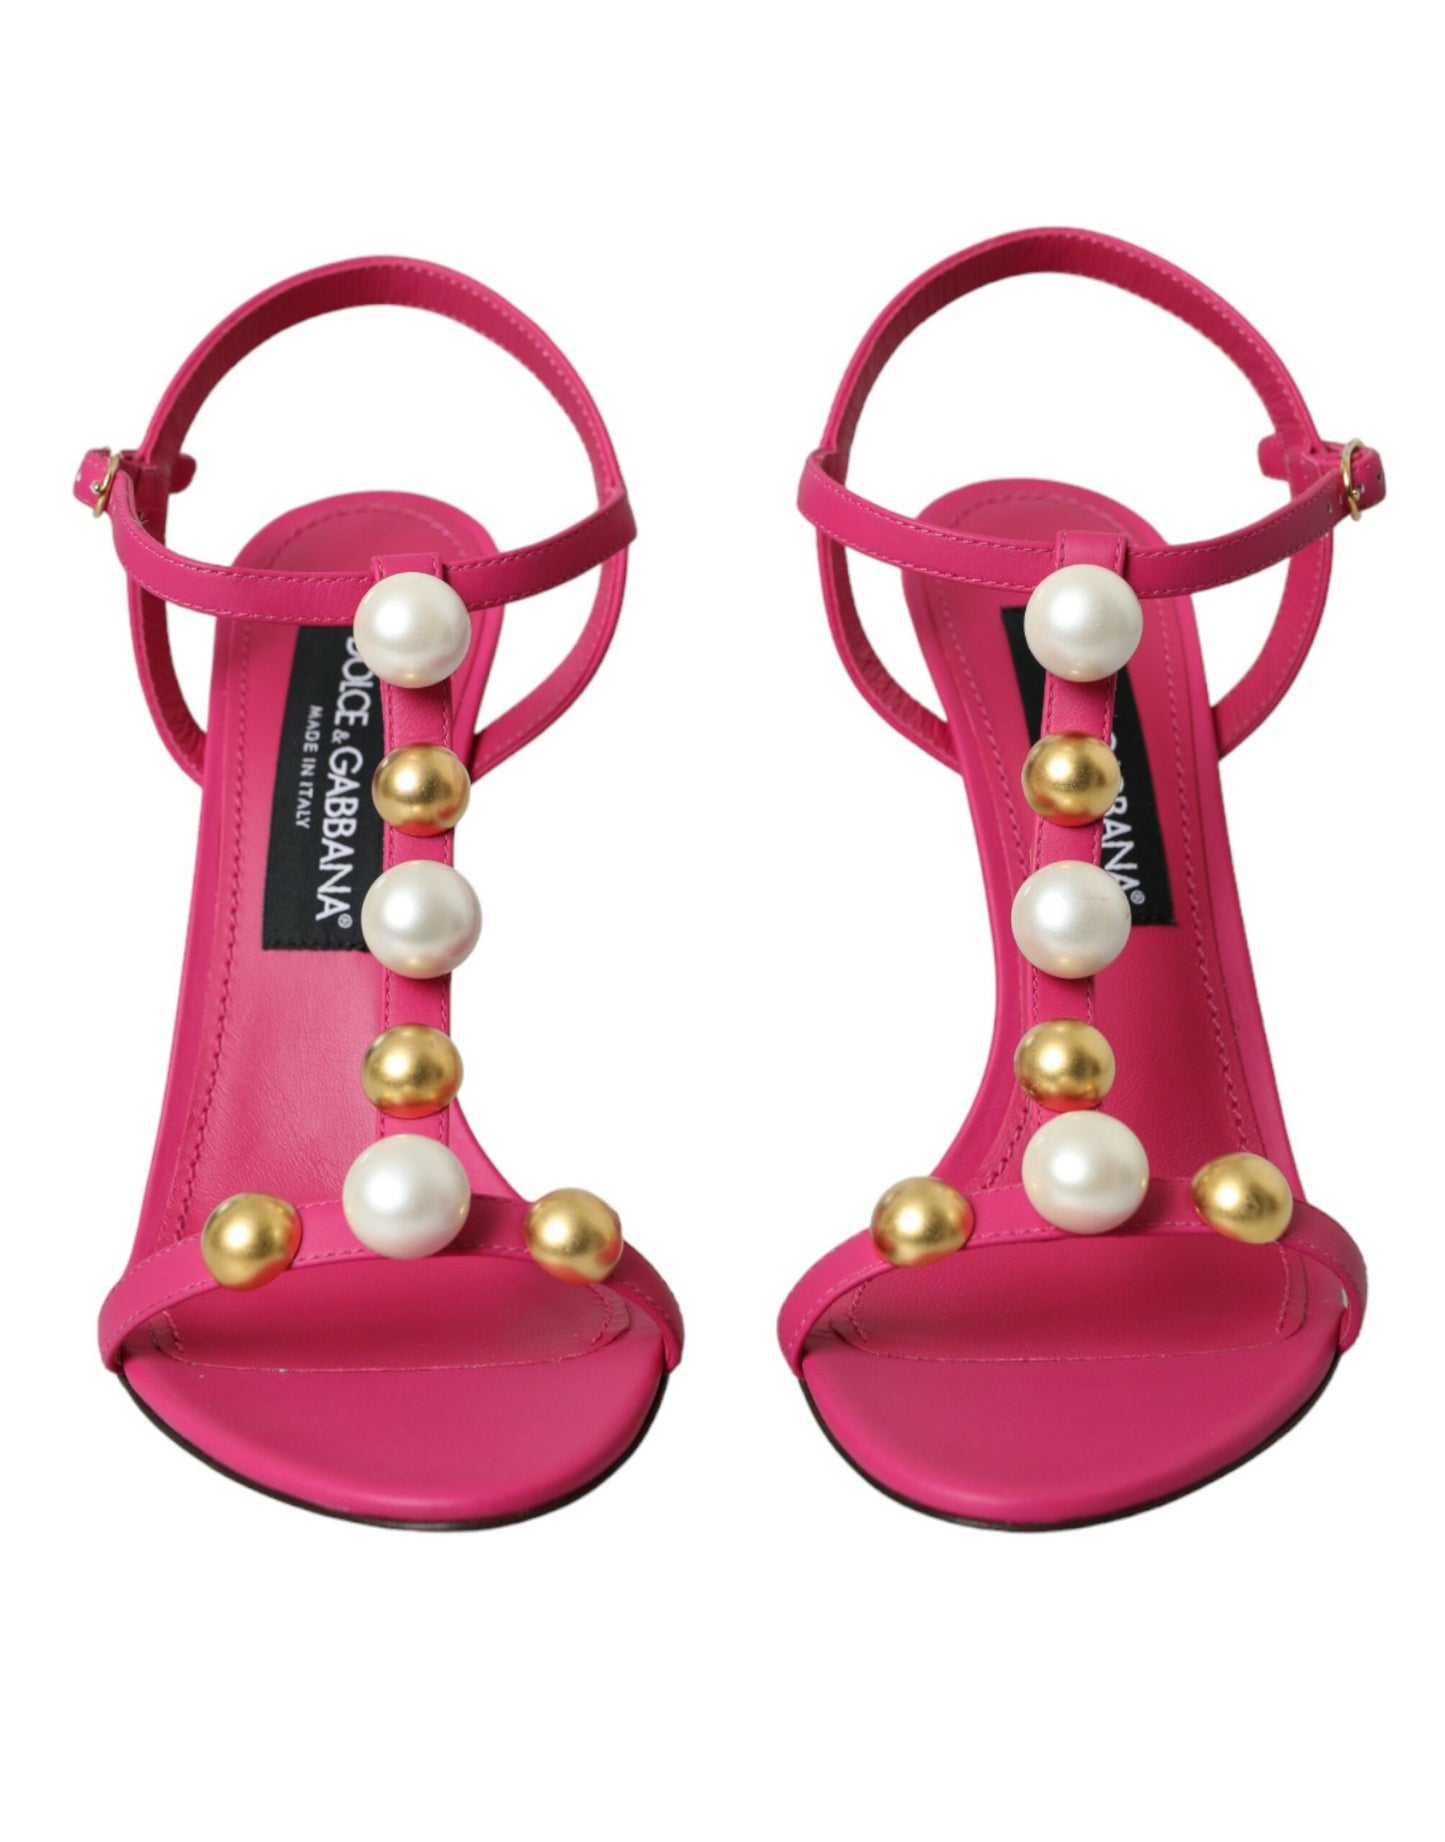 Dolce & Gabbana Pink Embellished Leather Sandals Heels Shoes